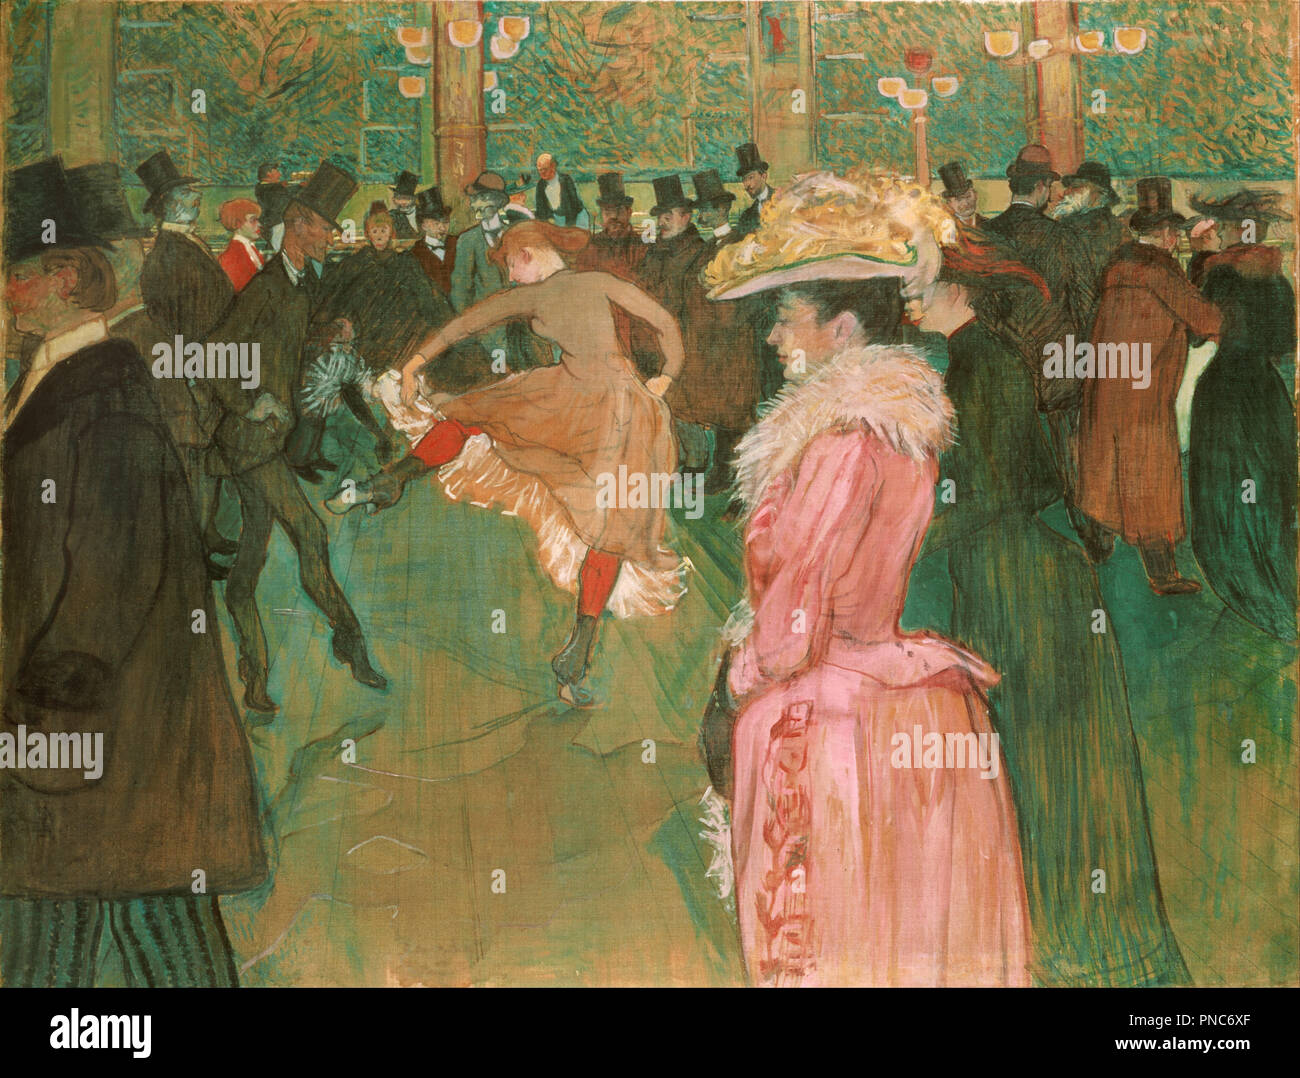 Al Moulin Rouge: la danza. Data/Periodo: 1890. La pittura. Olio su tela Olio su tela. Altezza: 1,156.97 mm (45.55 in); larghezza: 1,499.62 mm (59.04 in). Autore: Henri de Toulouse-Lautrec. TOULOUSE-LAUTREC, HENRI DE. Foto Stock